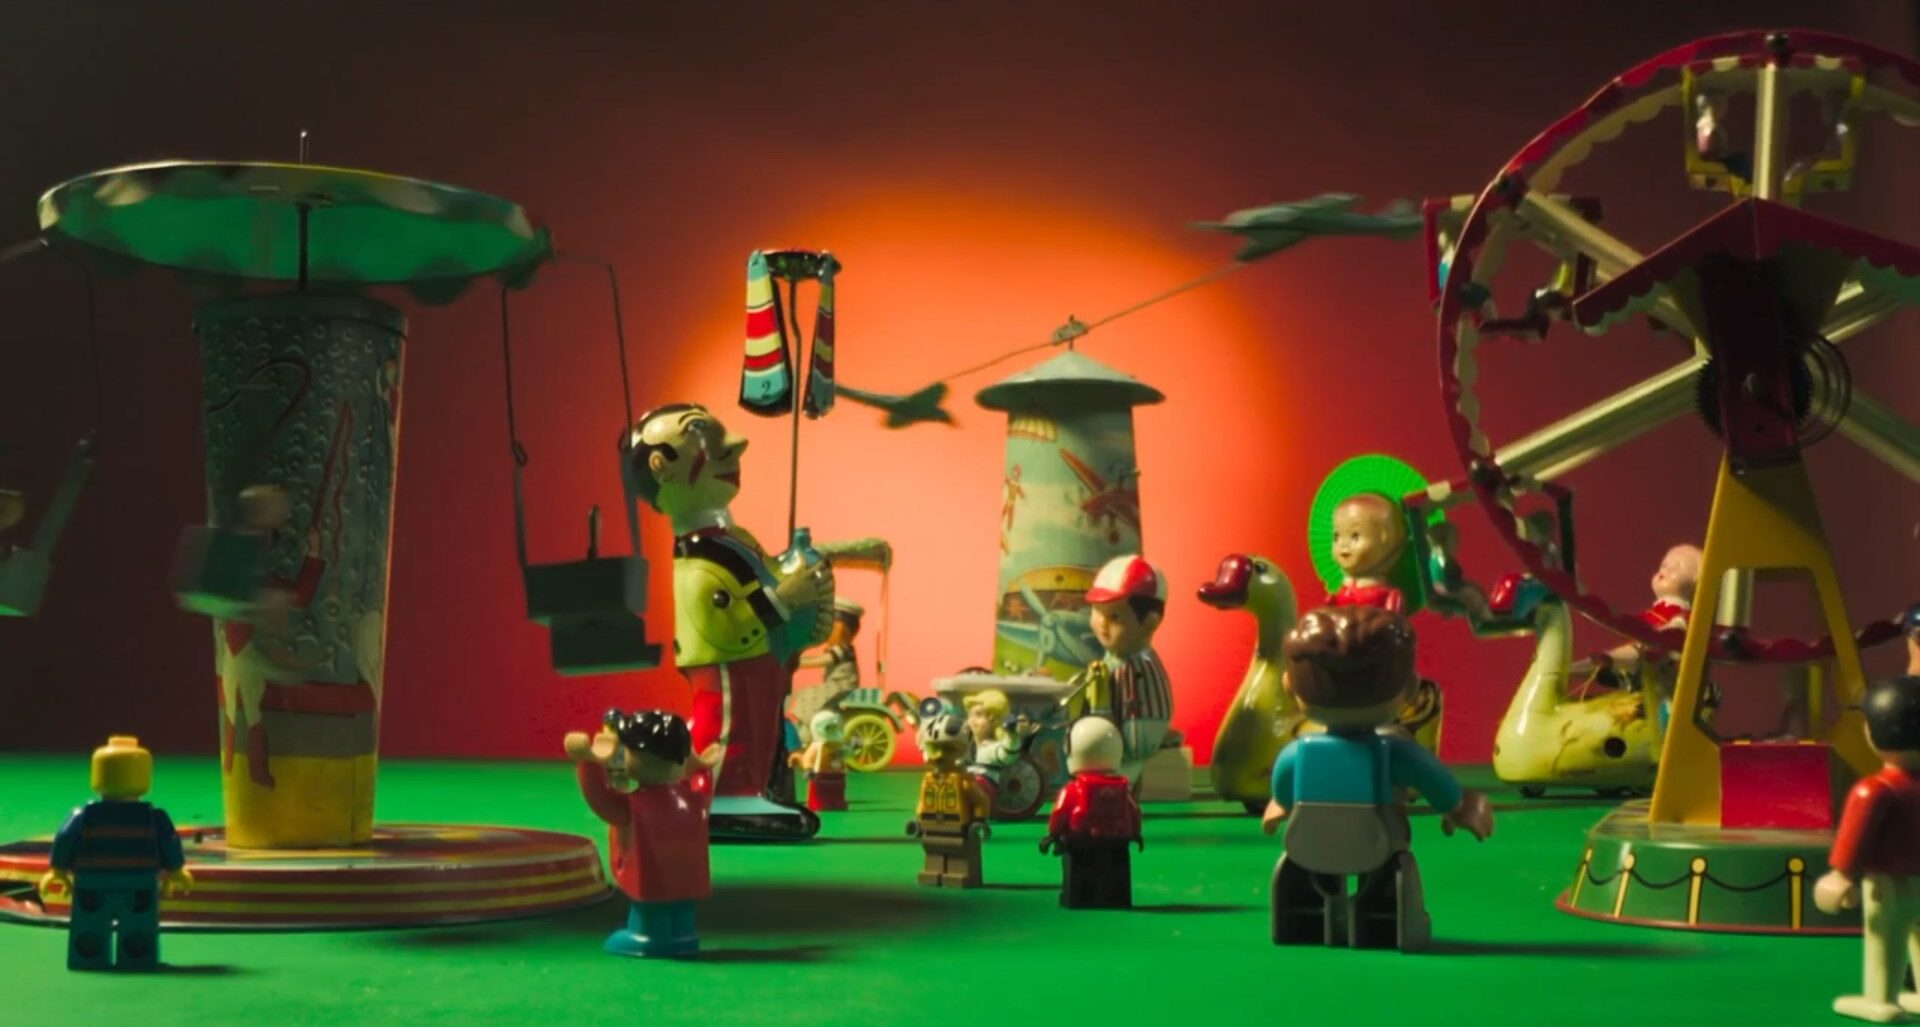 Cena do filme Cinema Almanac. Nela, vemos vários brinquedos em cima de uma superfície verde, em um ambiente com fundo vermelho que parece um parque de diversões, com roda gigante, chapéu mexicano e um trenzinho. Os bonecos que estão no cenário variam de tamanho, alguns pequenos e outros bem maiores. 